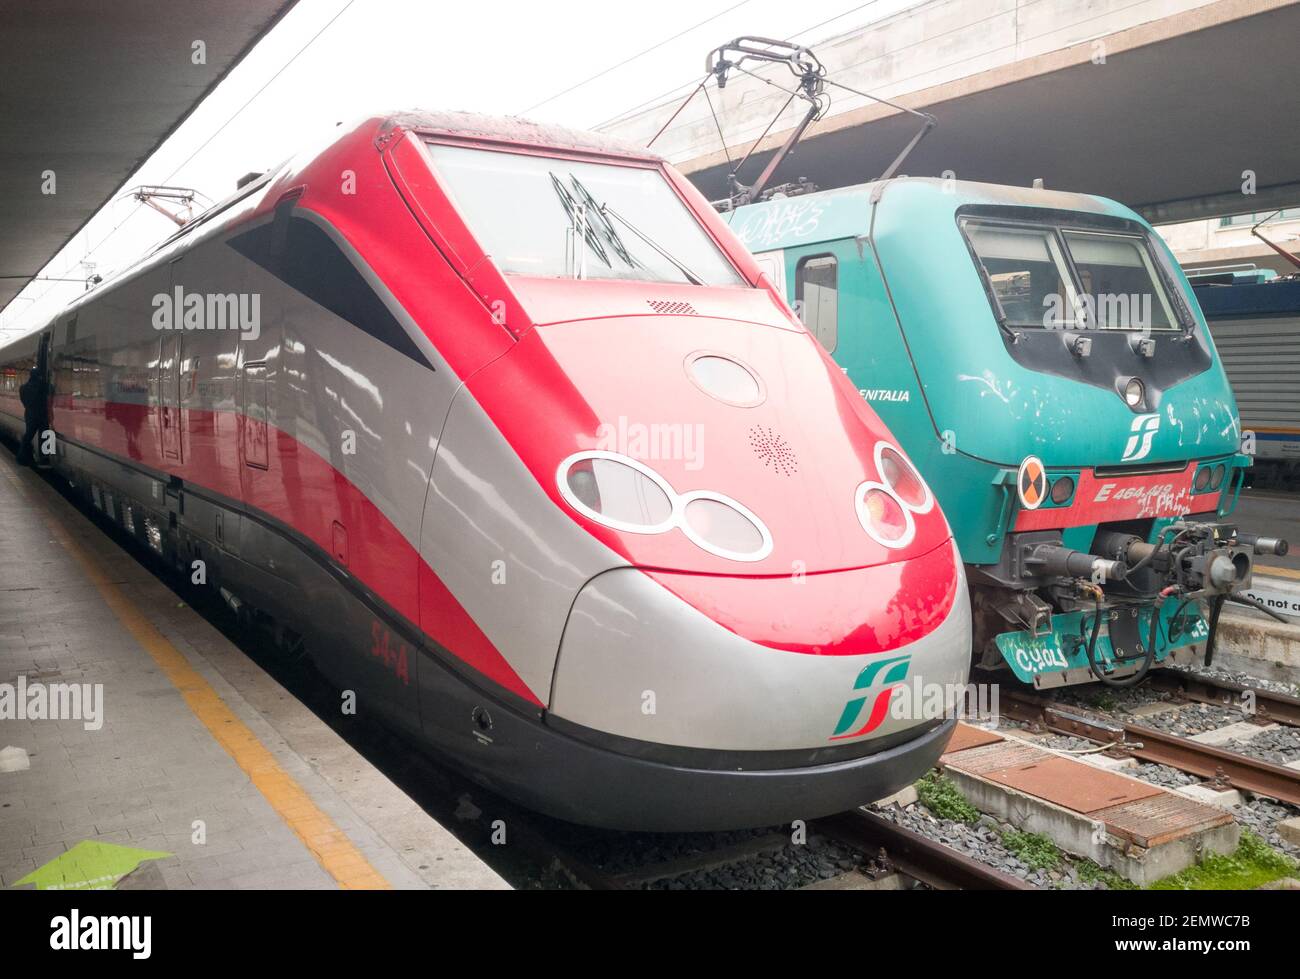 FLORENCE, ITALIE - FÉVRIER 16 2021 : train à grande vitesse Frecciarossa  prêt à partir. C'est l'un des trains les plus rapides au monde Photo Stock  - Alamy